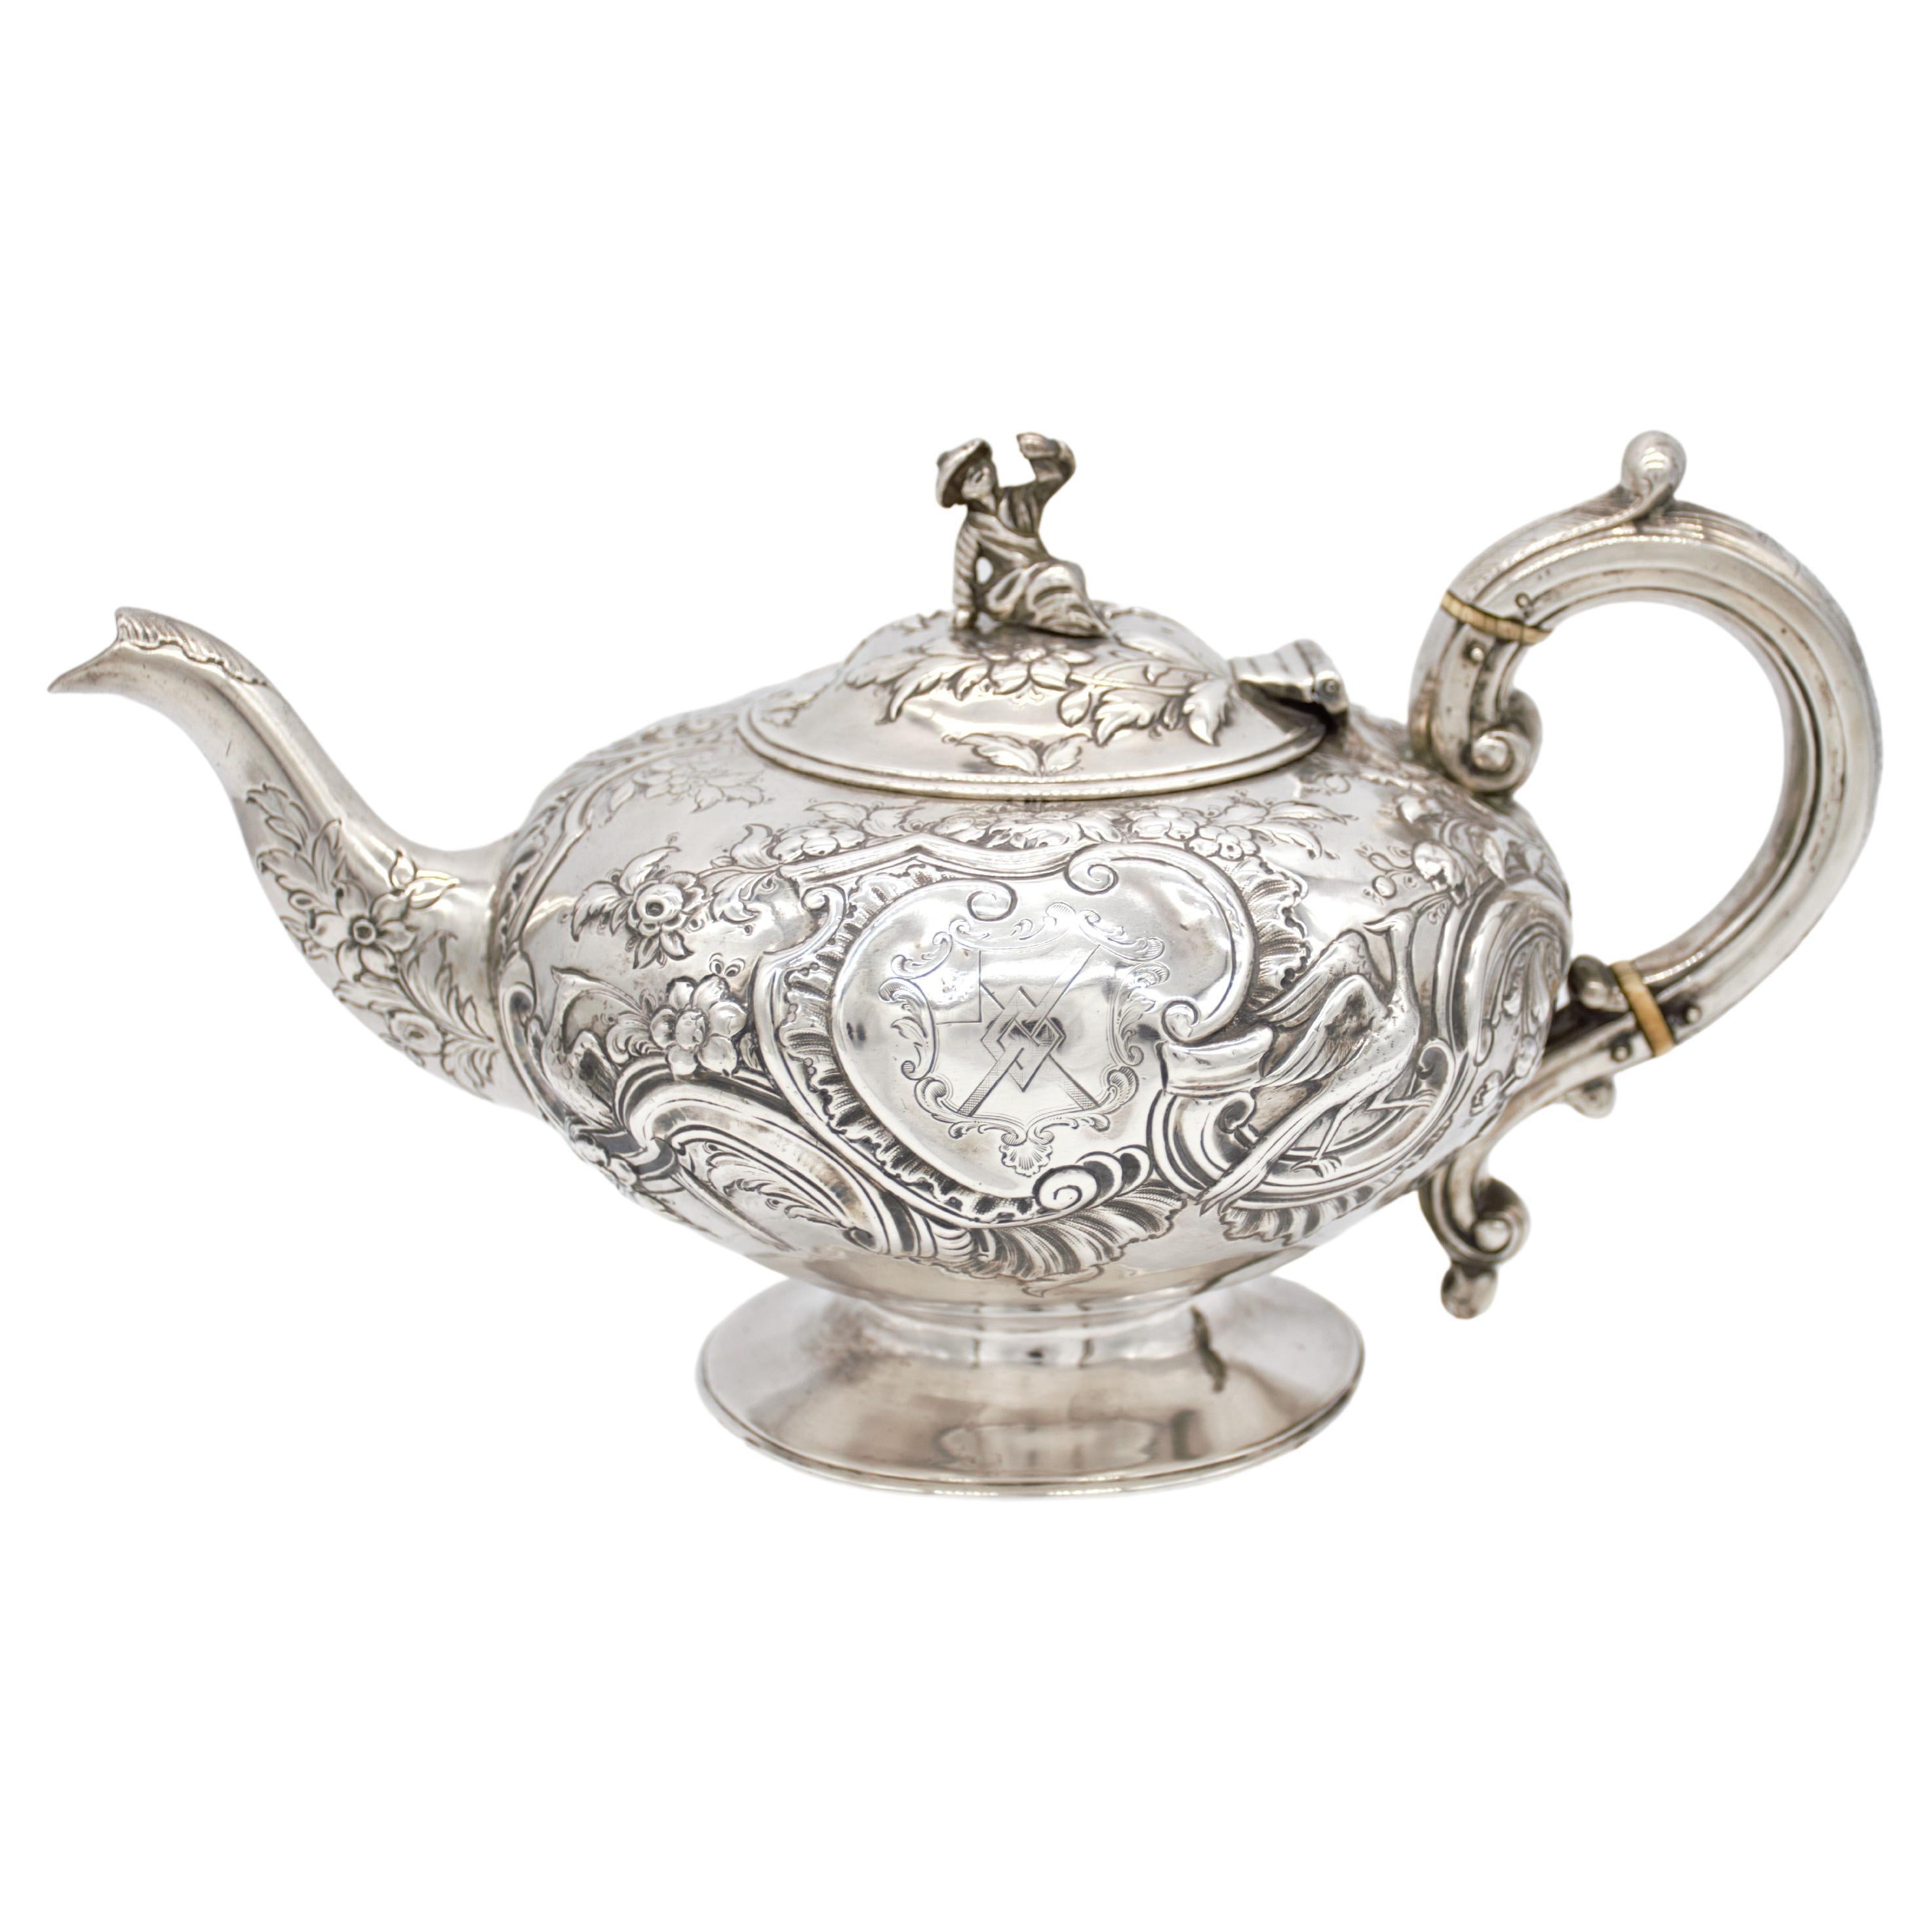 Außergewöhnliche George III.-Teekanne des bedeutenden Silberschmieds Paul Storr, 1793